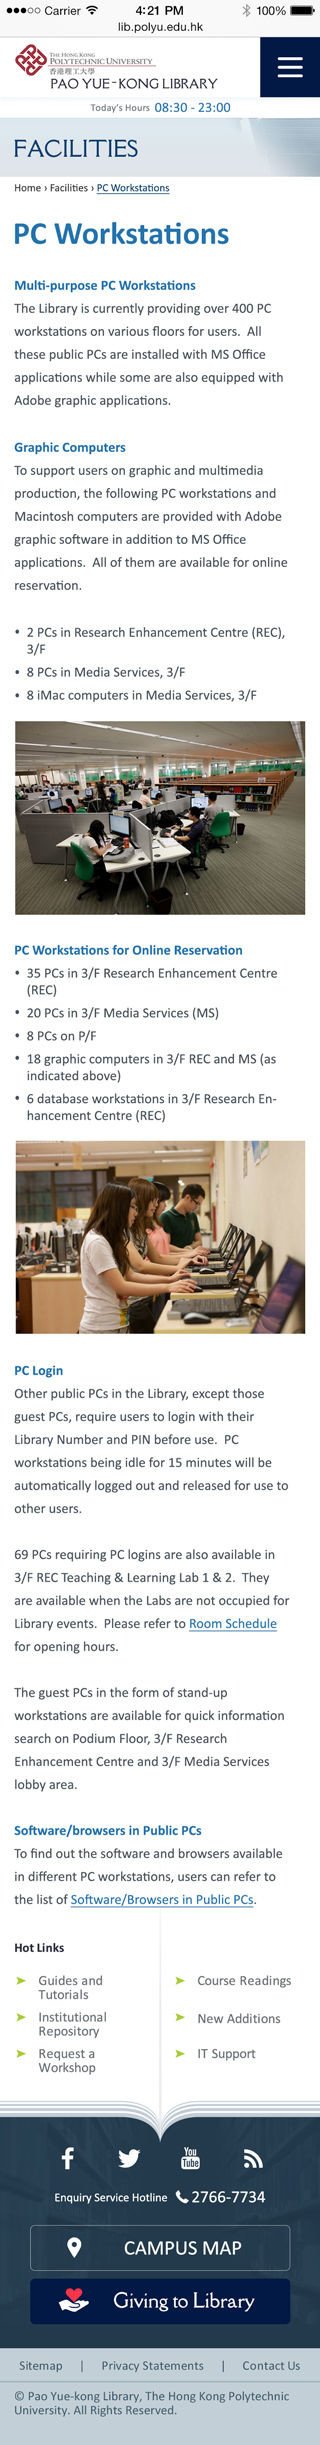 Hong Kong Polytechnic University website screenshot for mobile version 3 of 3